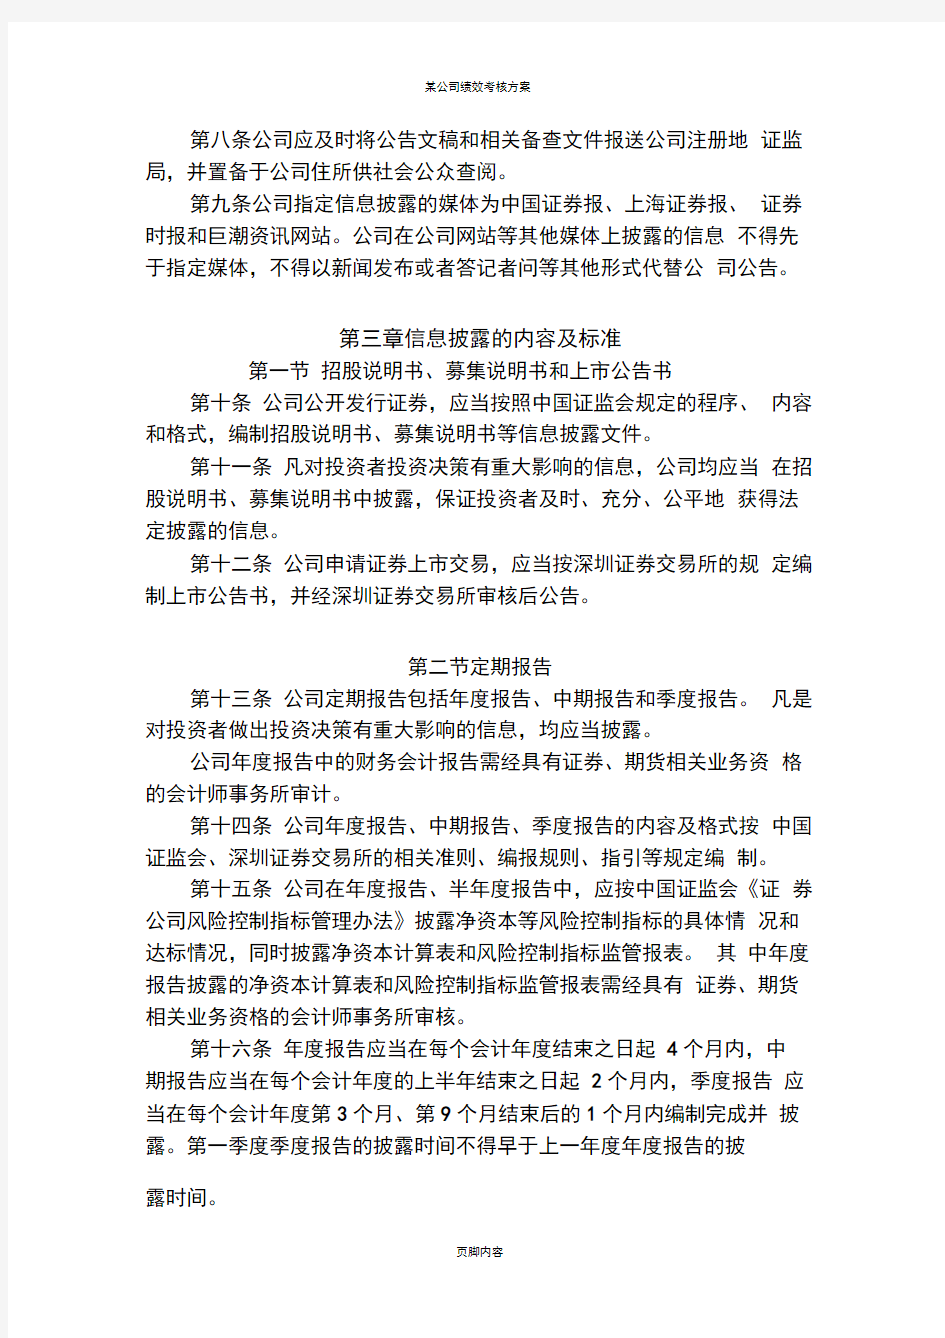 长江证券股份有限公司信息披露事务管理制度汇总